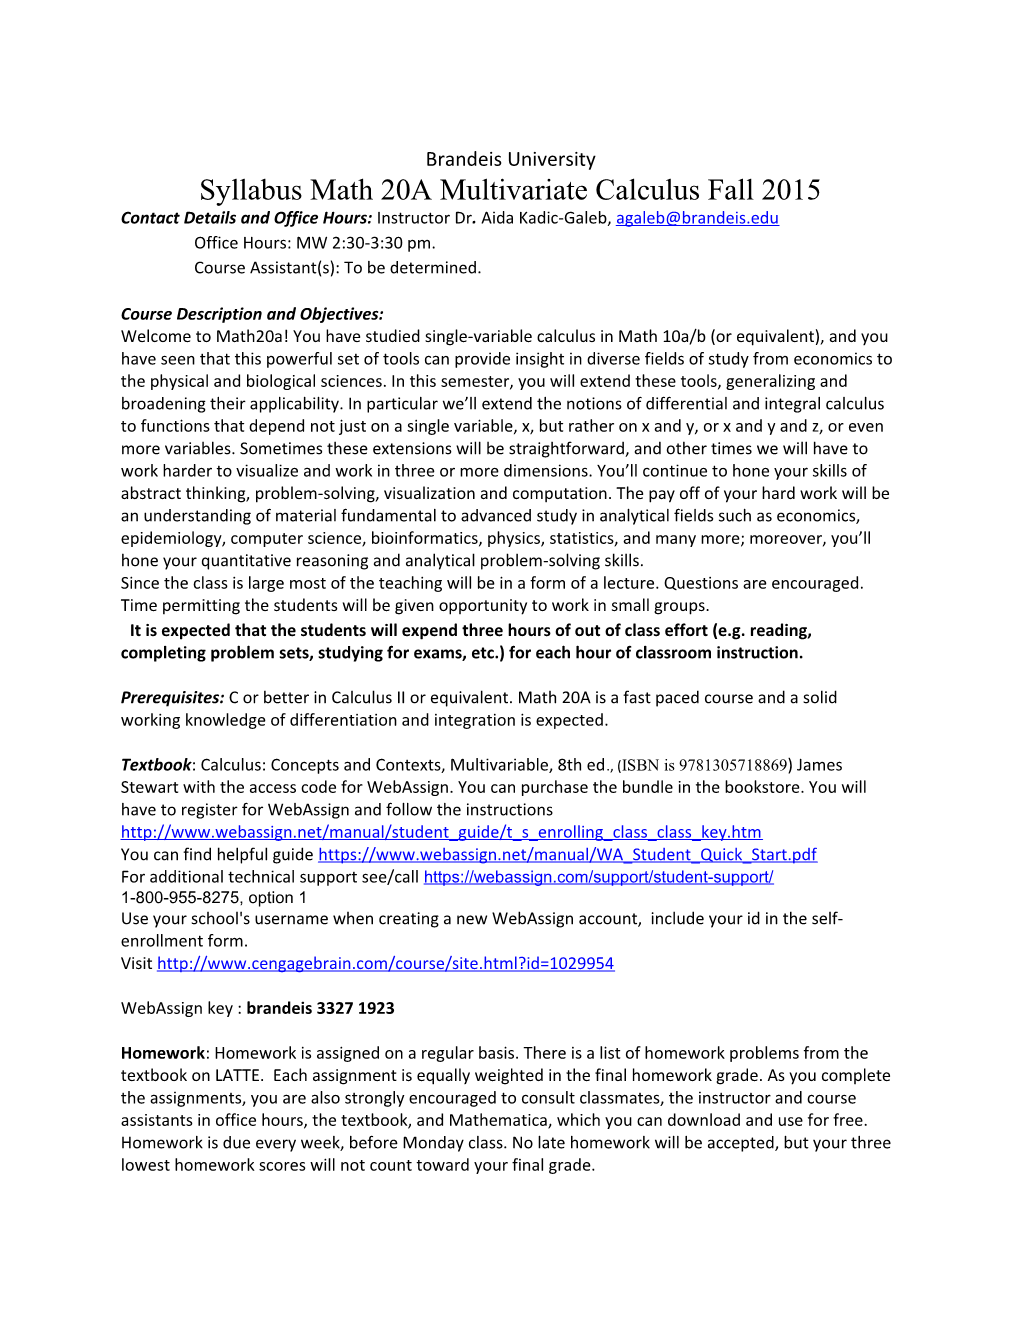 Syllabus Math 20A Multivariate Calculus Fall 2015